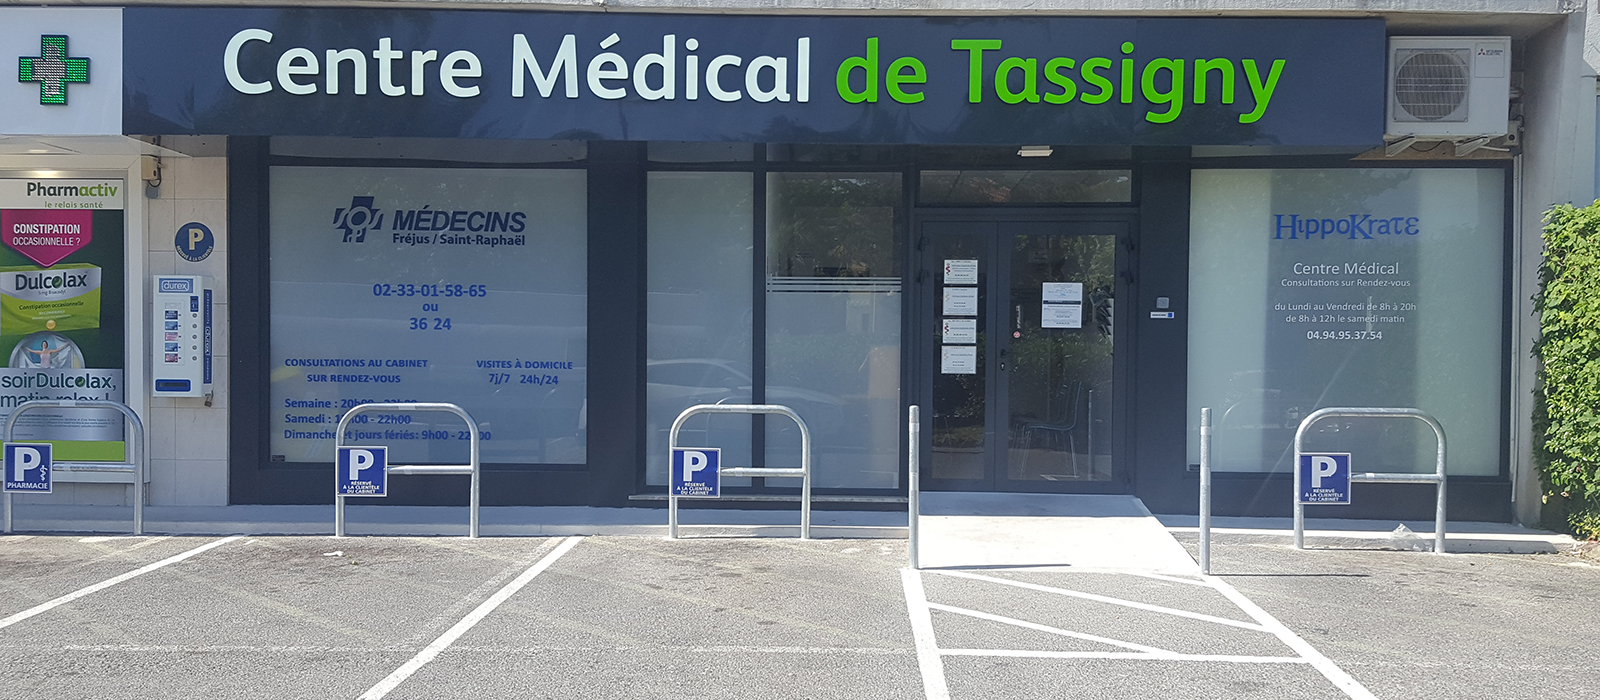 SOS Médecins Fréjus Saint-Raphaël - Centre Médical de Tassigny